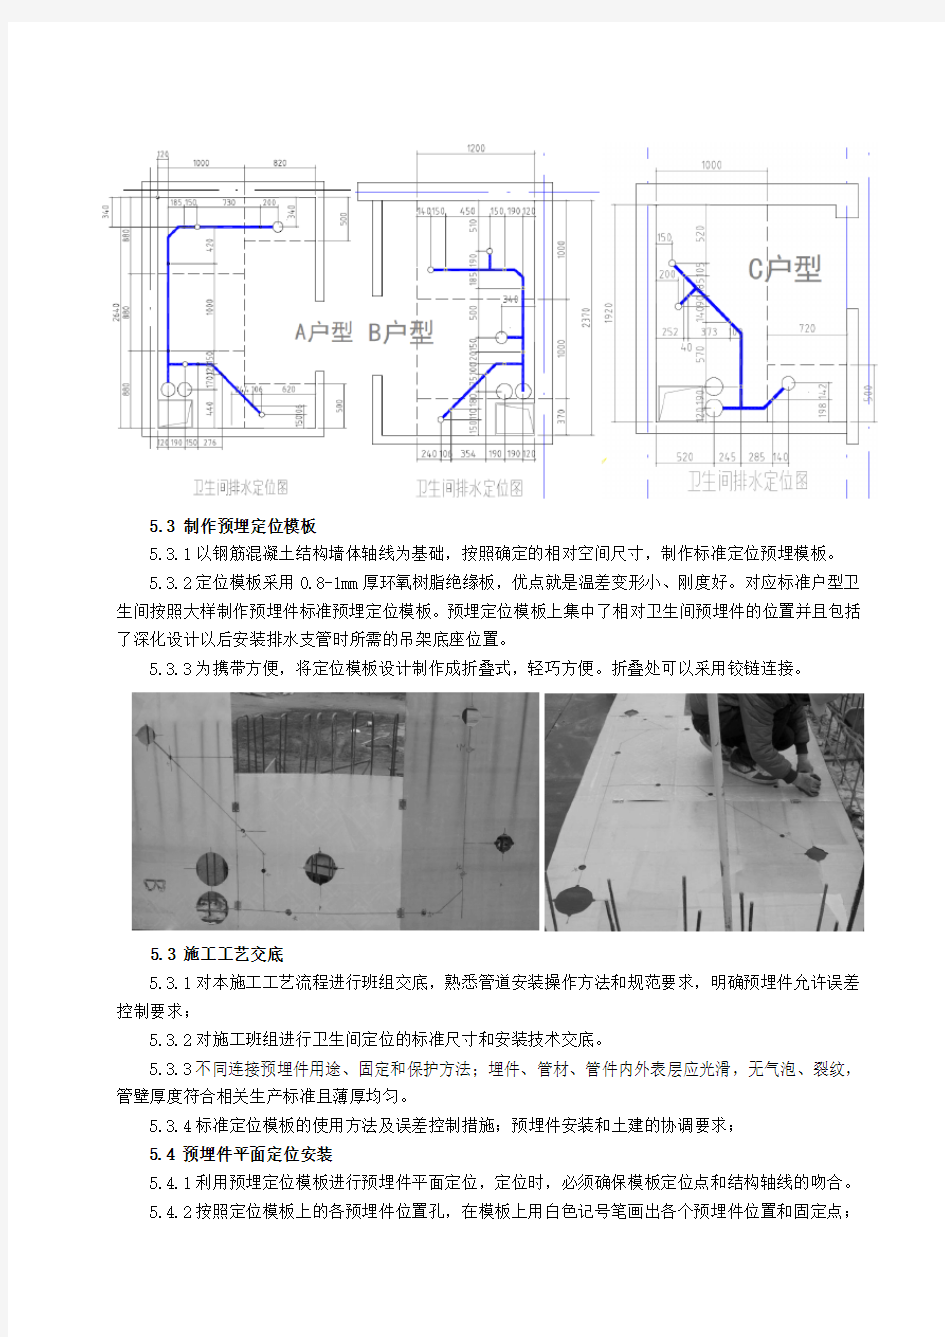 高层住宅排水管道装配式施工方法 2